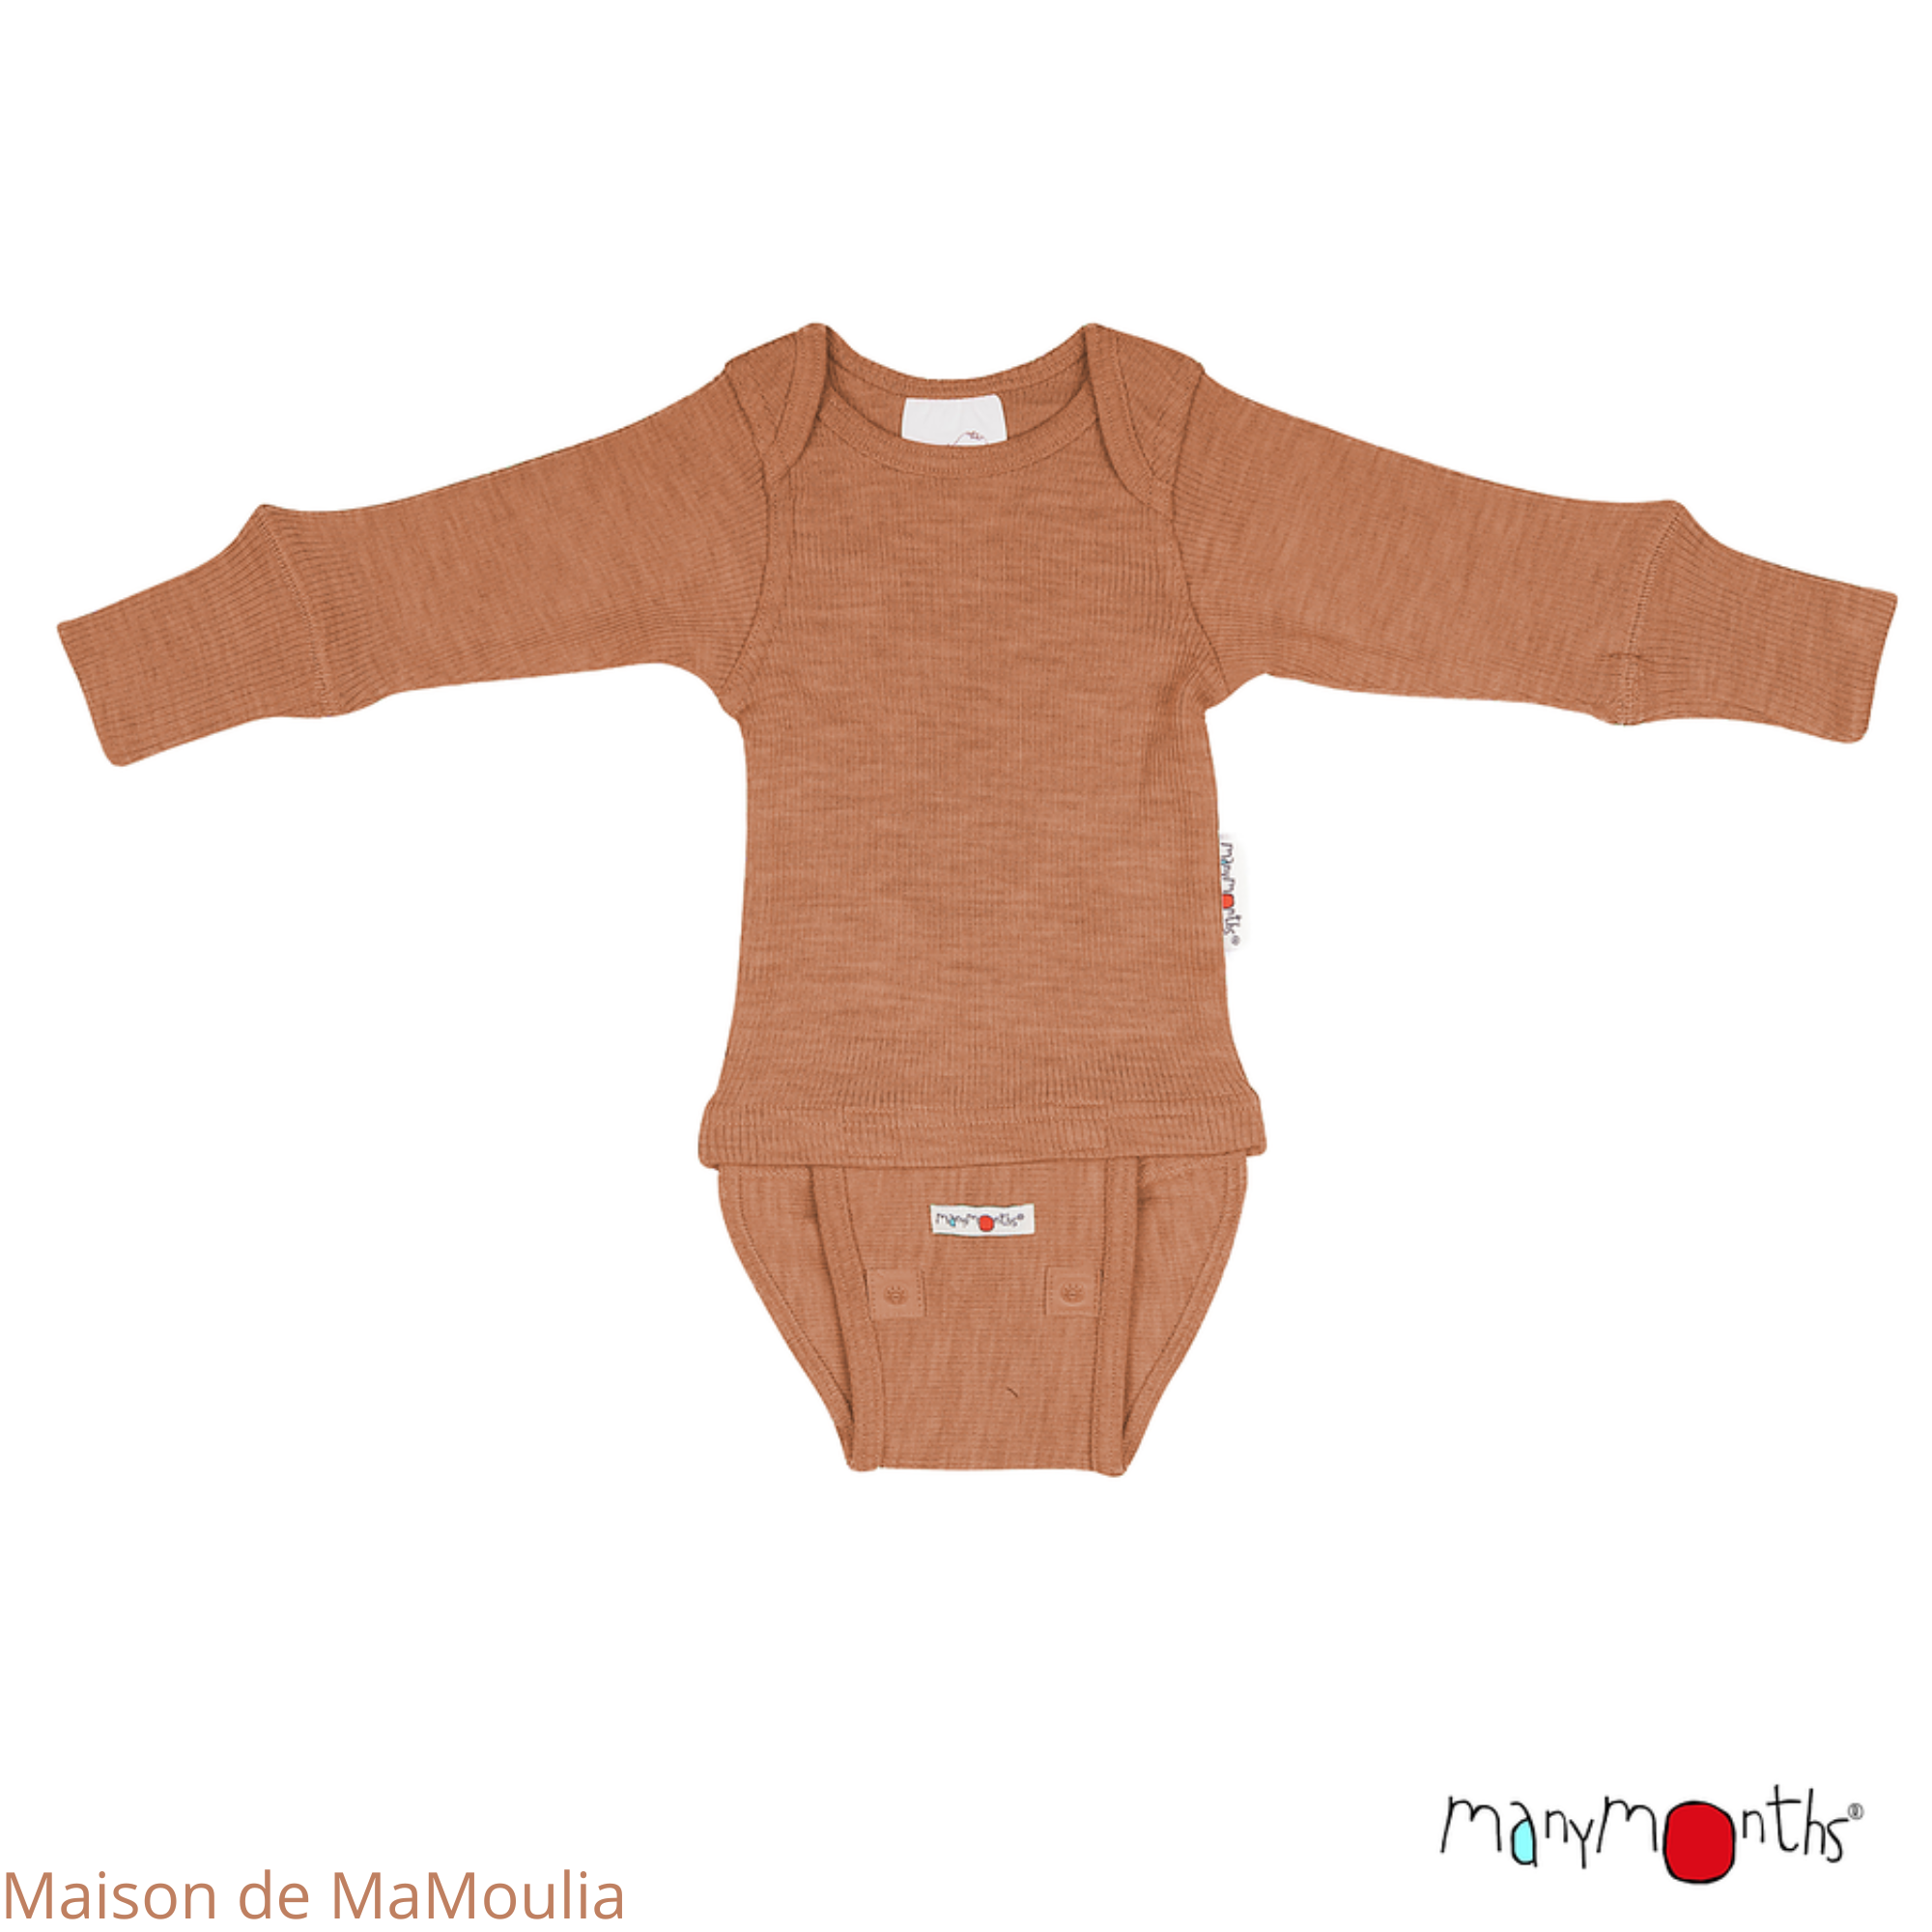 manymonths-body-shirt-manches-longues-ajustable-evoluif-bebe-enfant-laine-merinos-maison-de-mamoulia-potter-clay-terrecuite